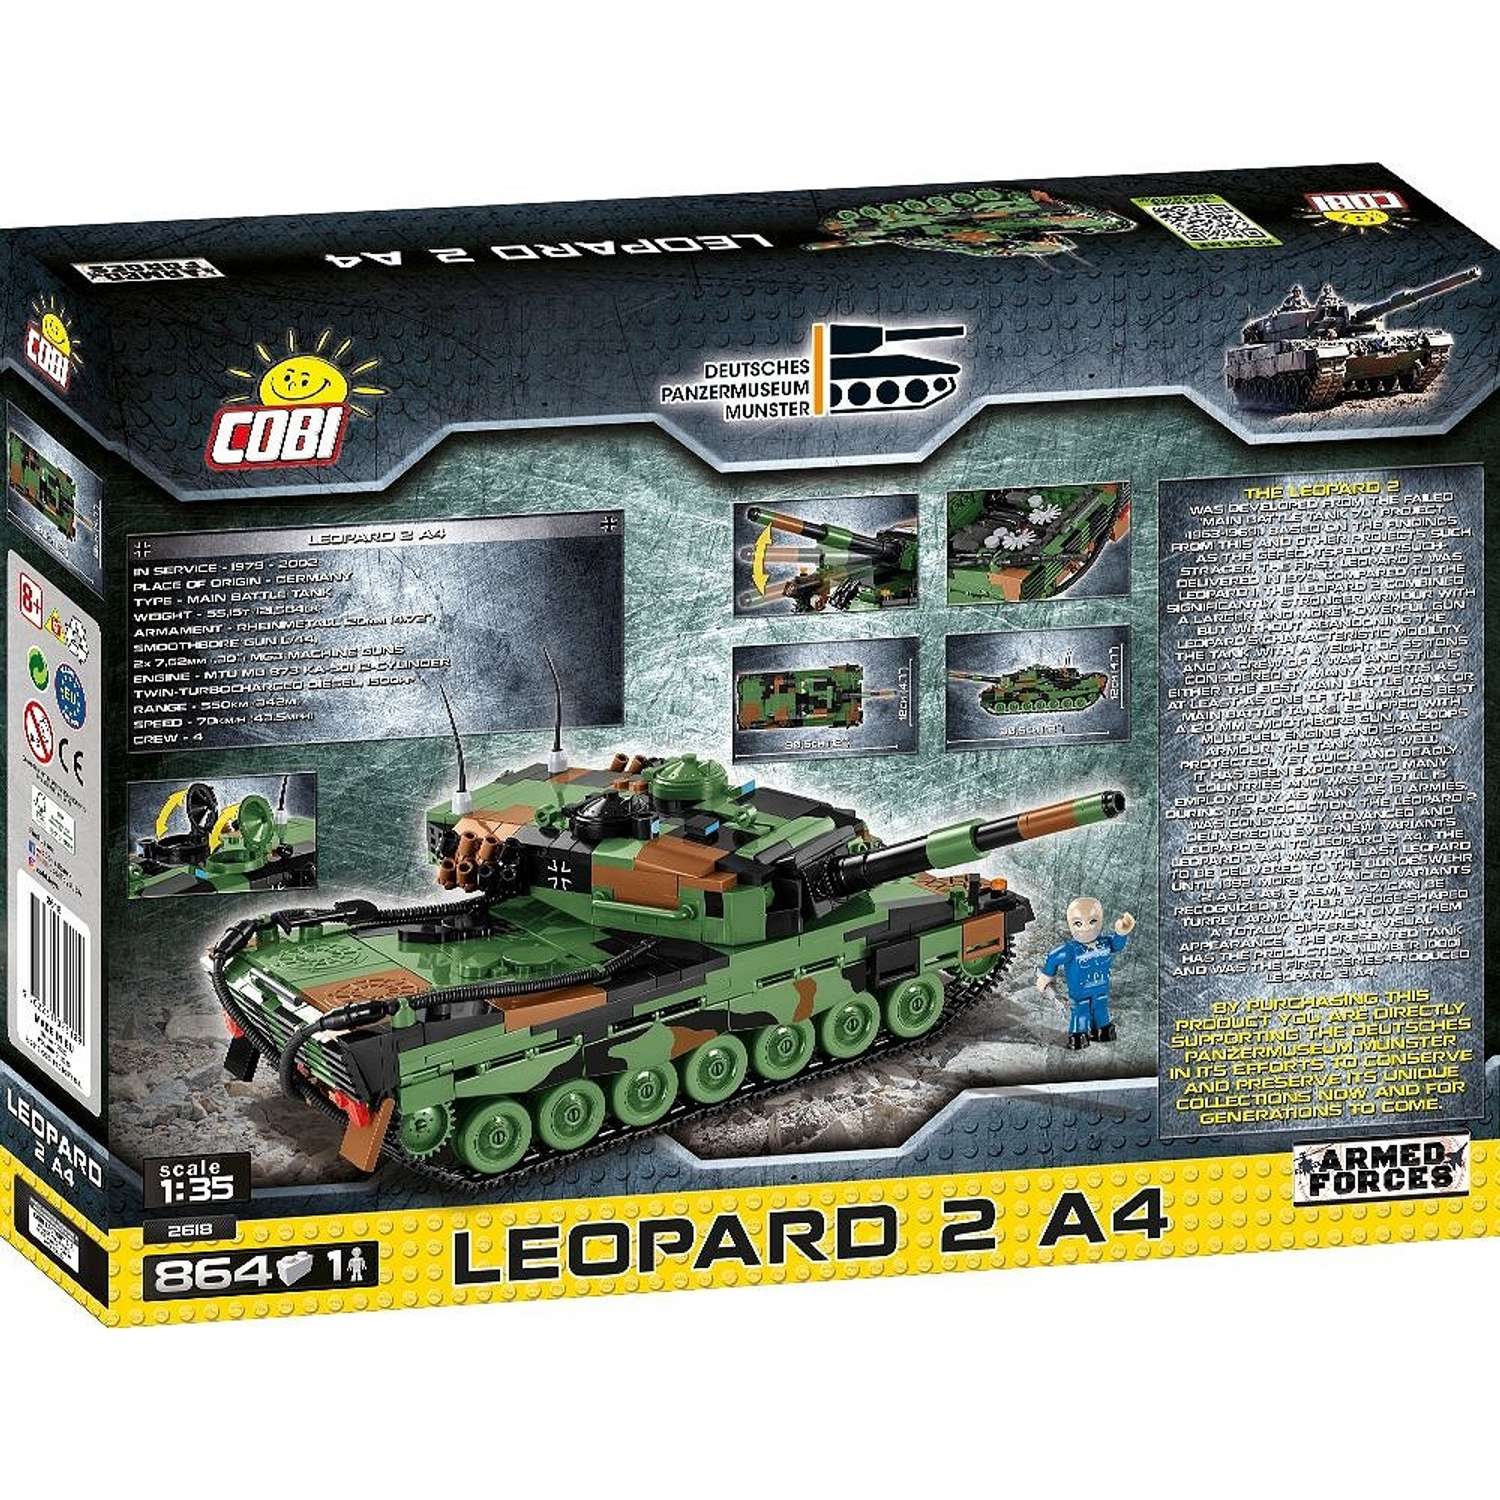 Конструктор COBI Вооруженные силы Танк Леопард Leopard 2 A4 864 деталей - фото 2